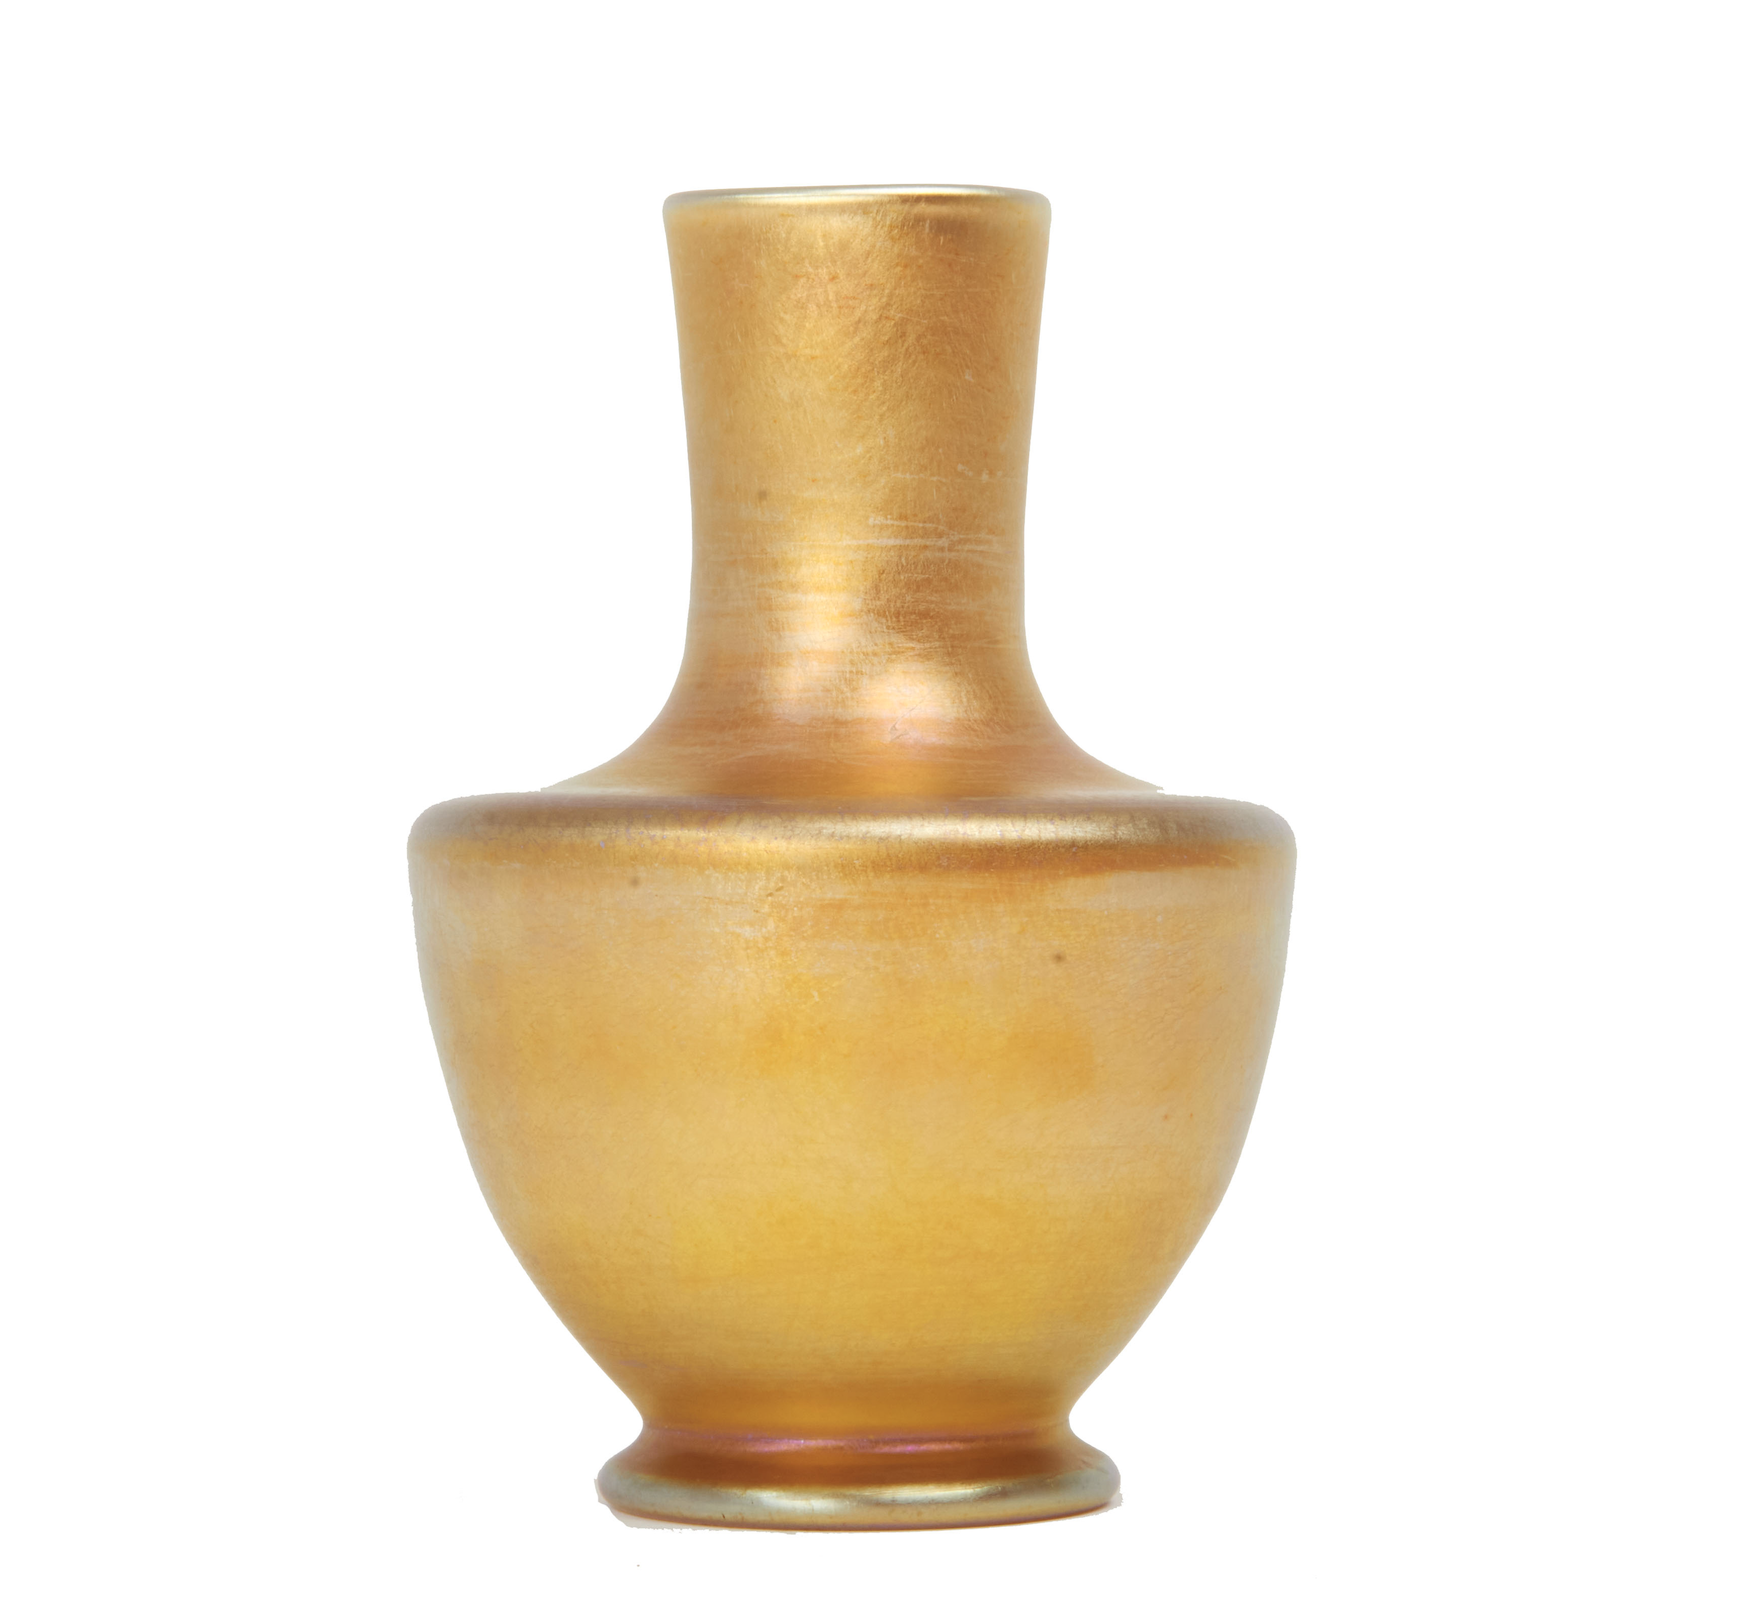  Tiffany Studios favrile glass bud vase, $544